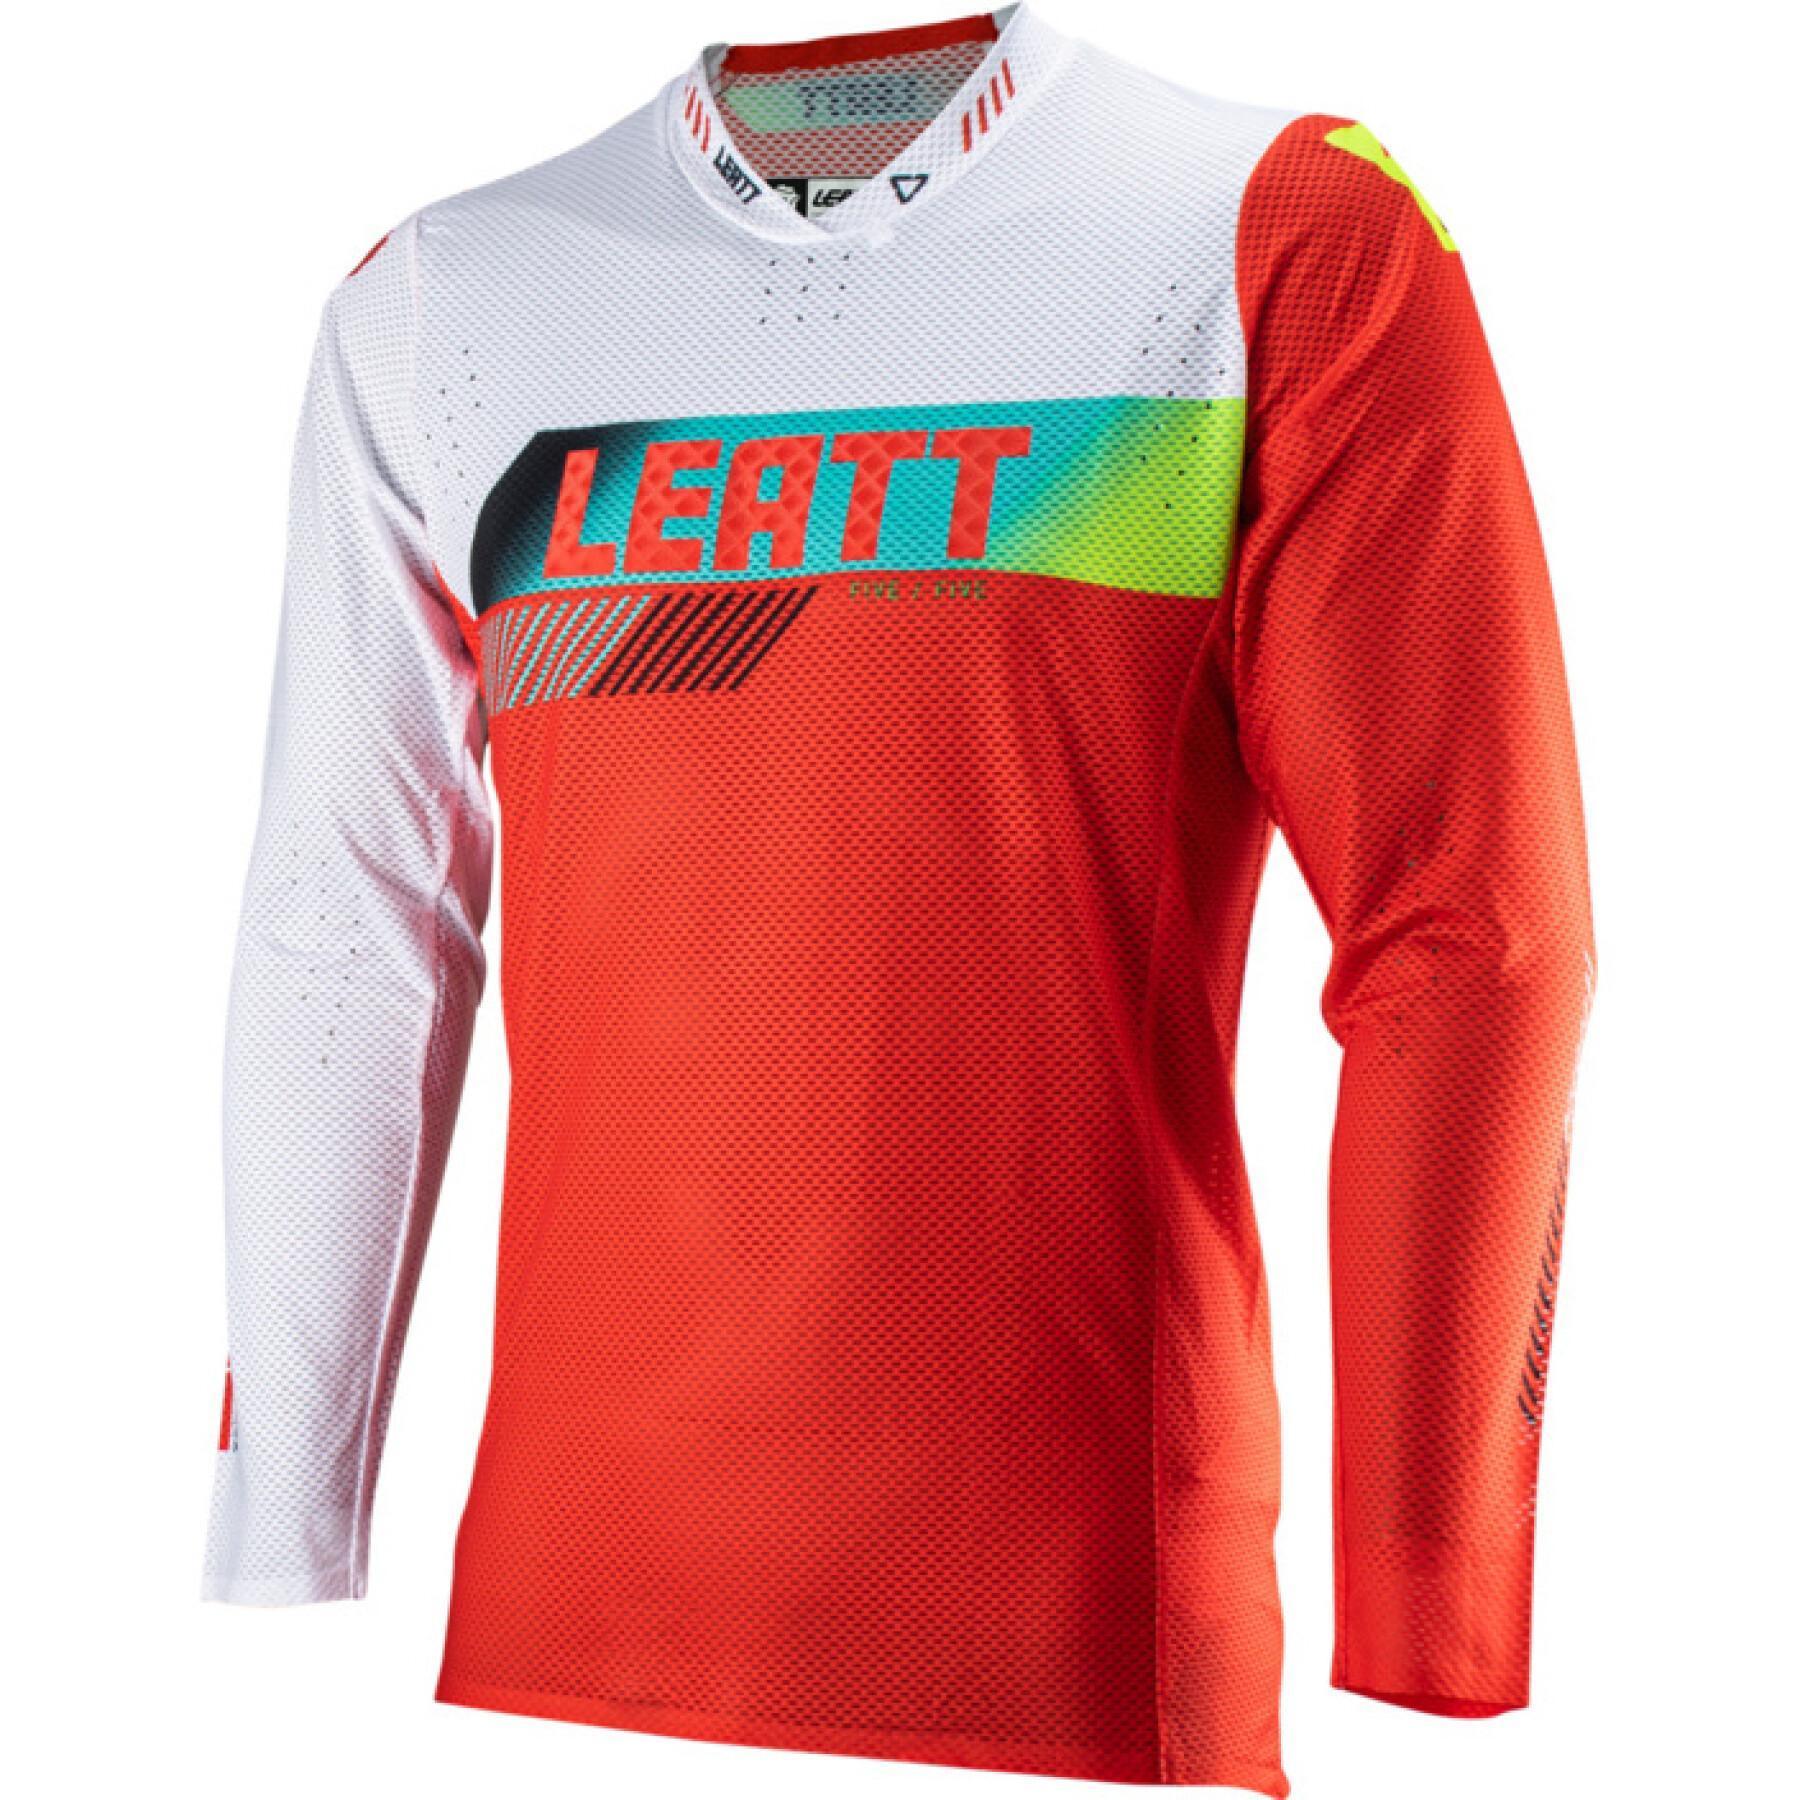 Motocross-tröja Leatt 5.5 UltraWeld 23